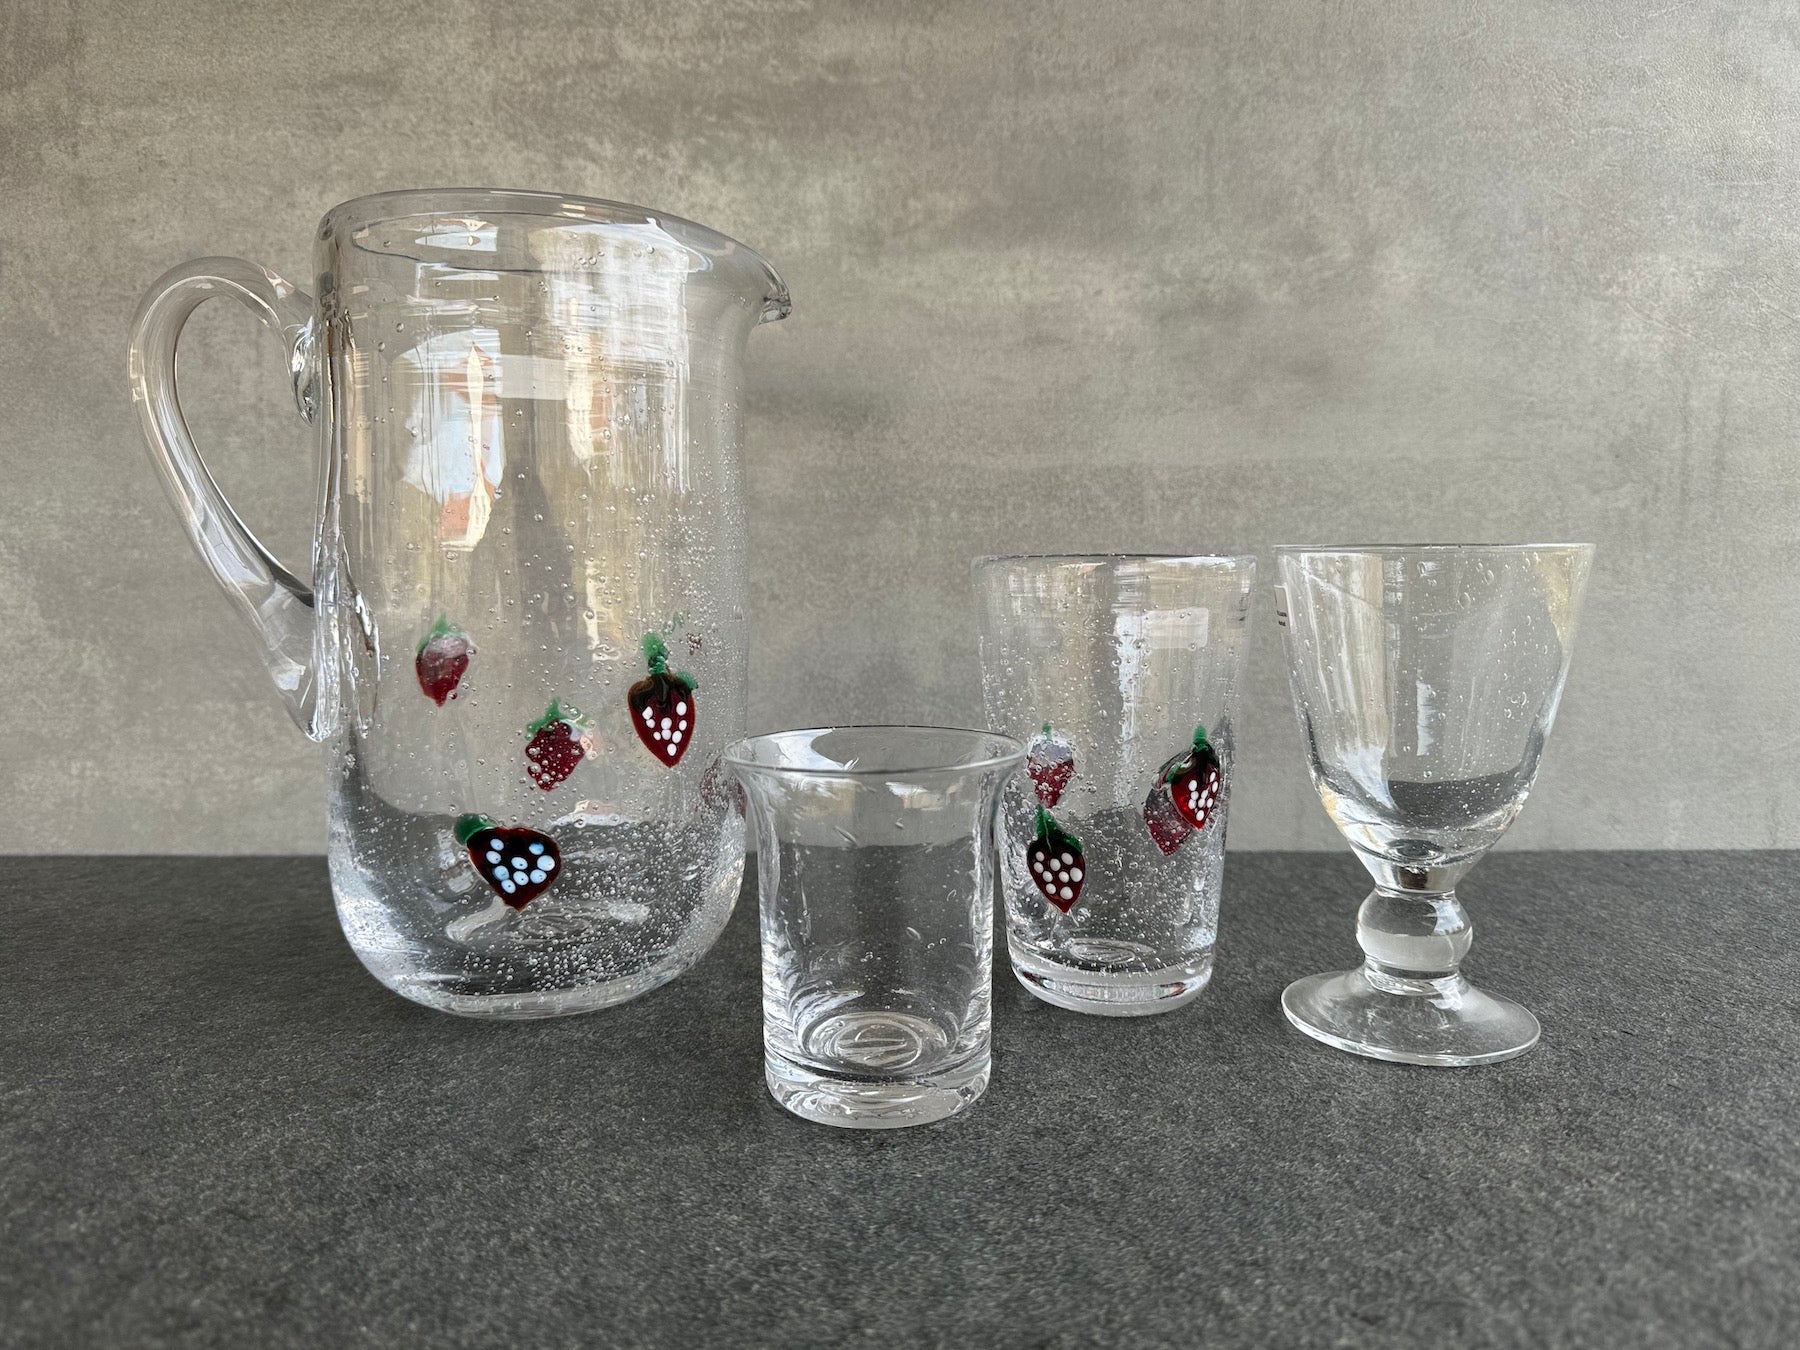 Serie La Fresa von der Elias Glashütte. Antikgläser Wasserglas und Weinglas.